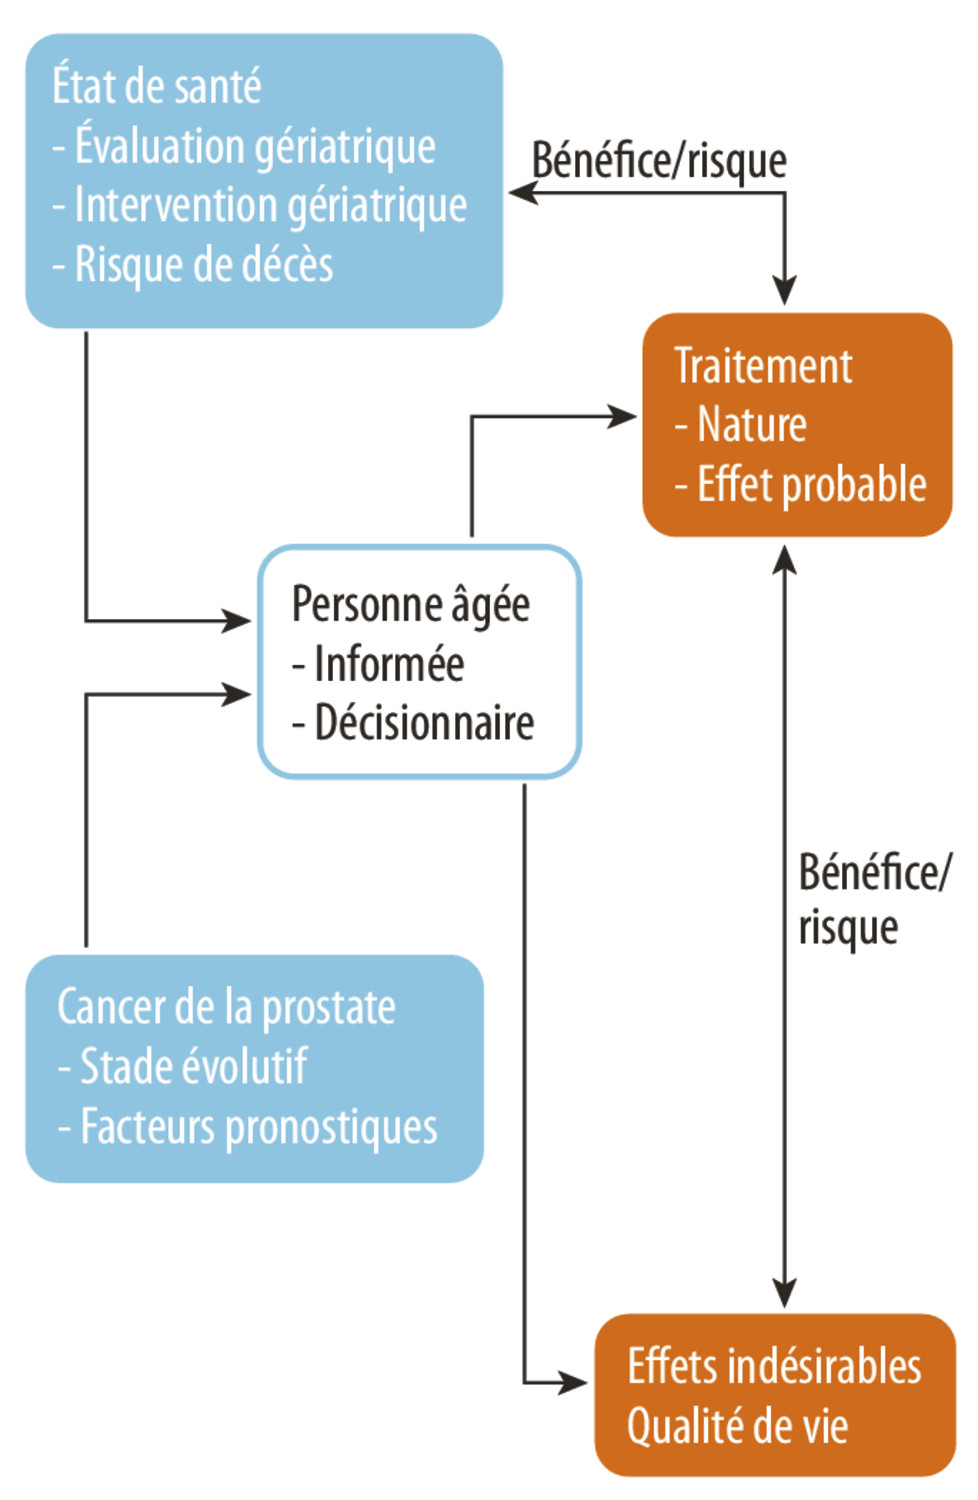 Contexte général de prise en charge du cancer de la prostate chez la personne âgée - Figure 7